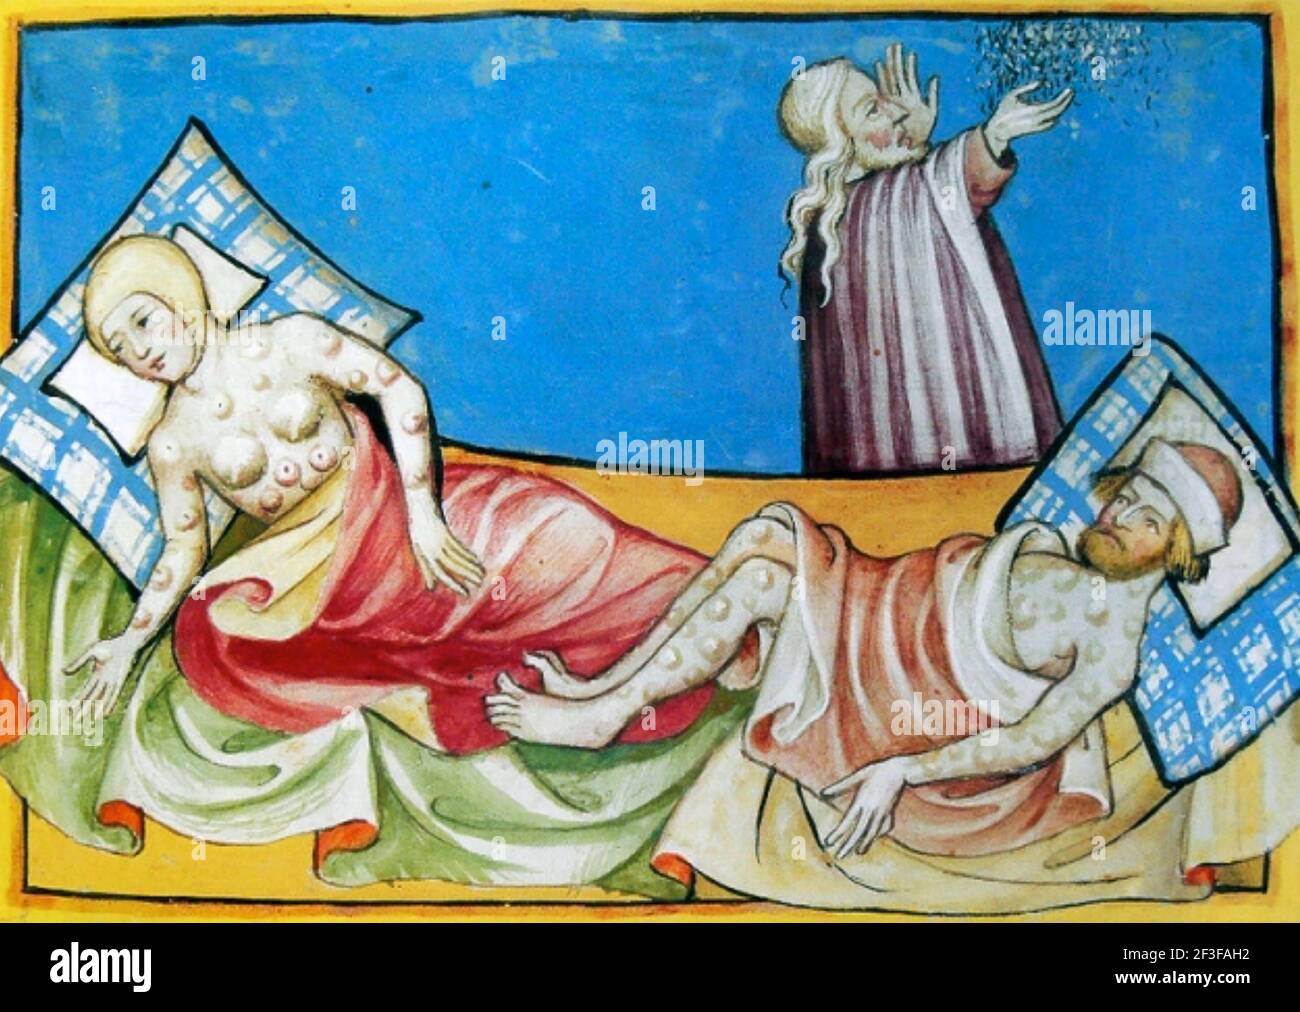 LA MORT NOIRE illustration médiévale de personnes souffrant de ganglions lymphatiques enflés, un signe de peste bubonique. Banque D'Images